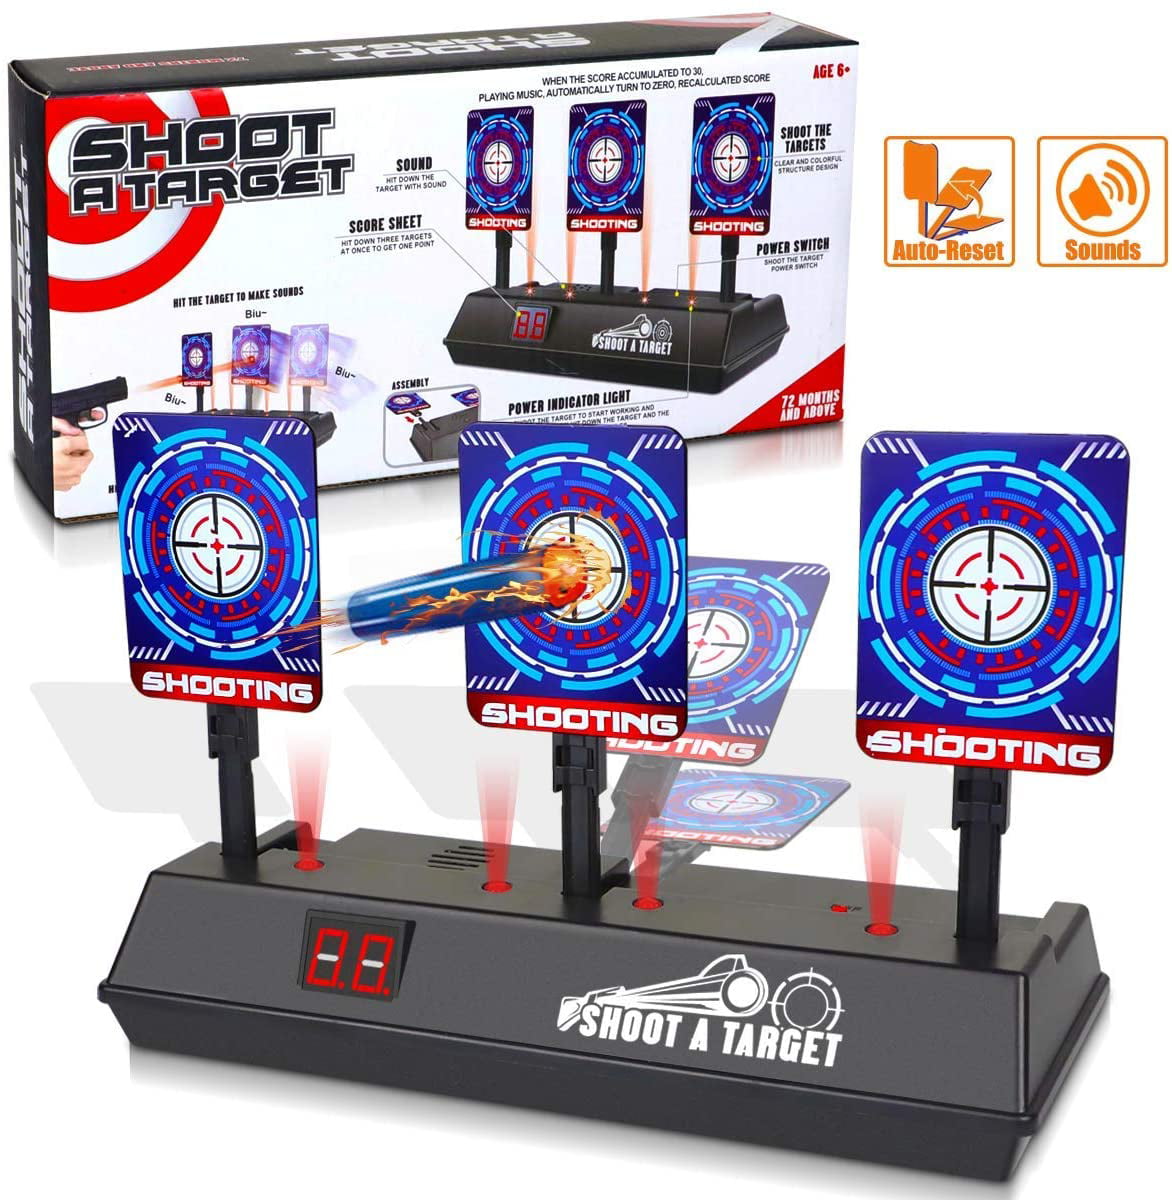 Electric Scoring Auto Reset Shooting Digital Target for Nerf Gun Toy Kids Gifts 